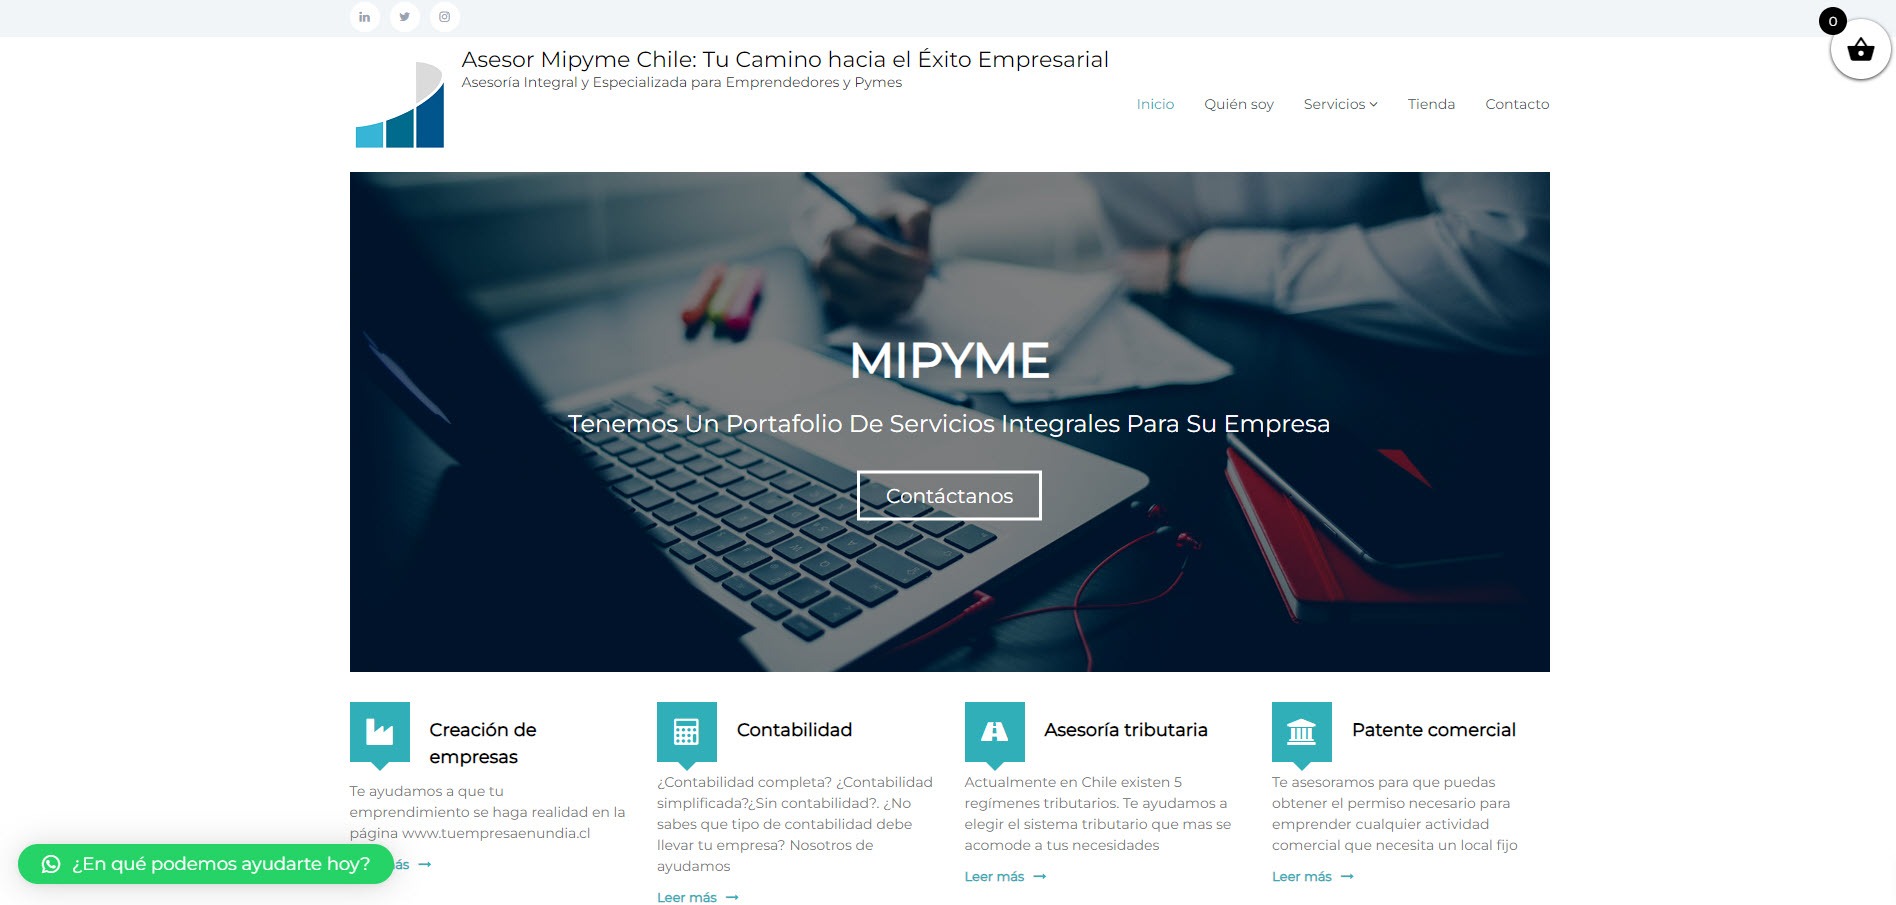 Proyecto AsesorMiPyme: Transformando Asesorías Empresariales en Línea